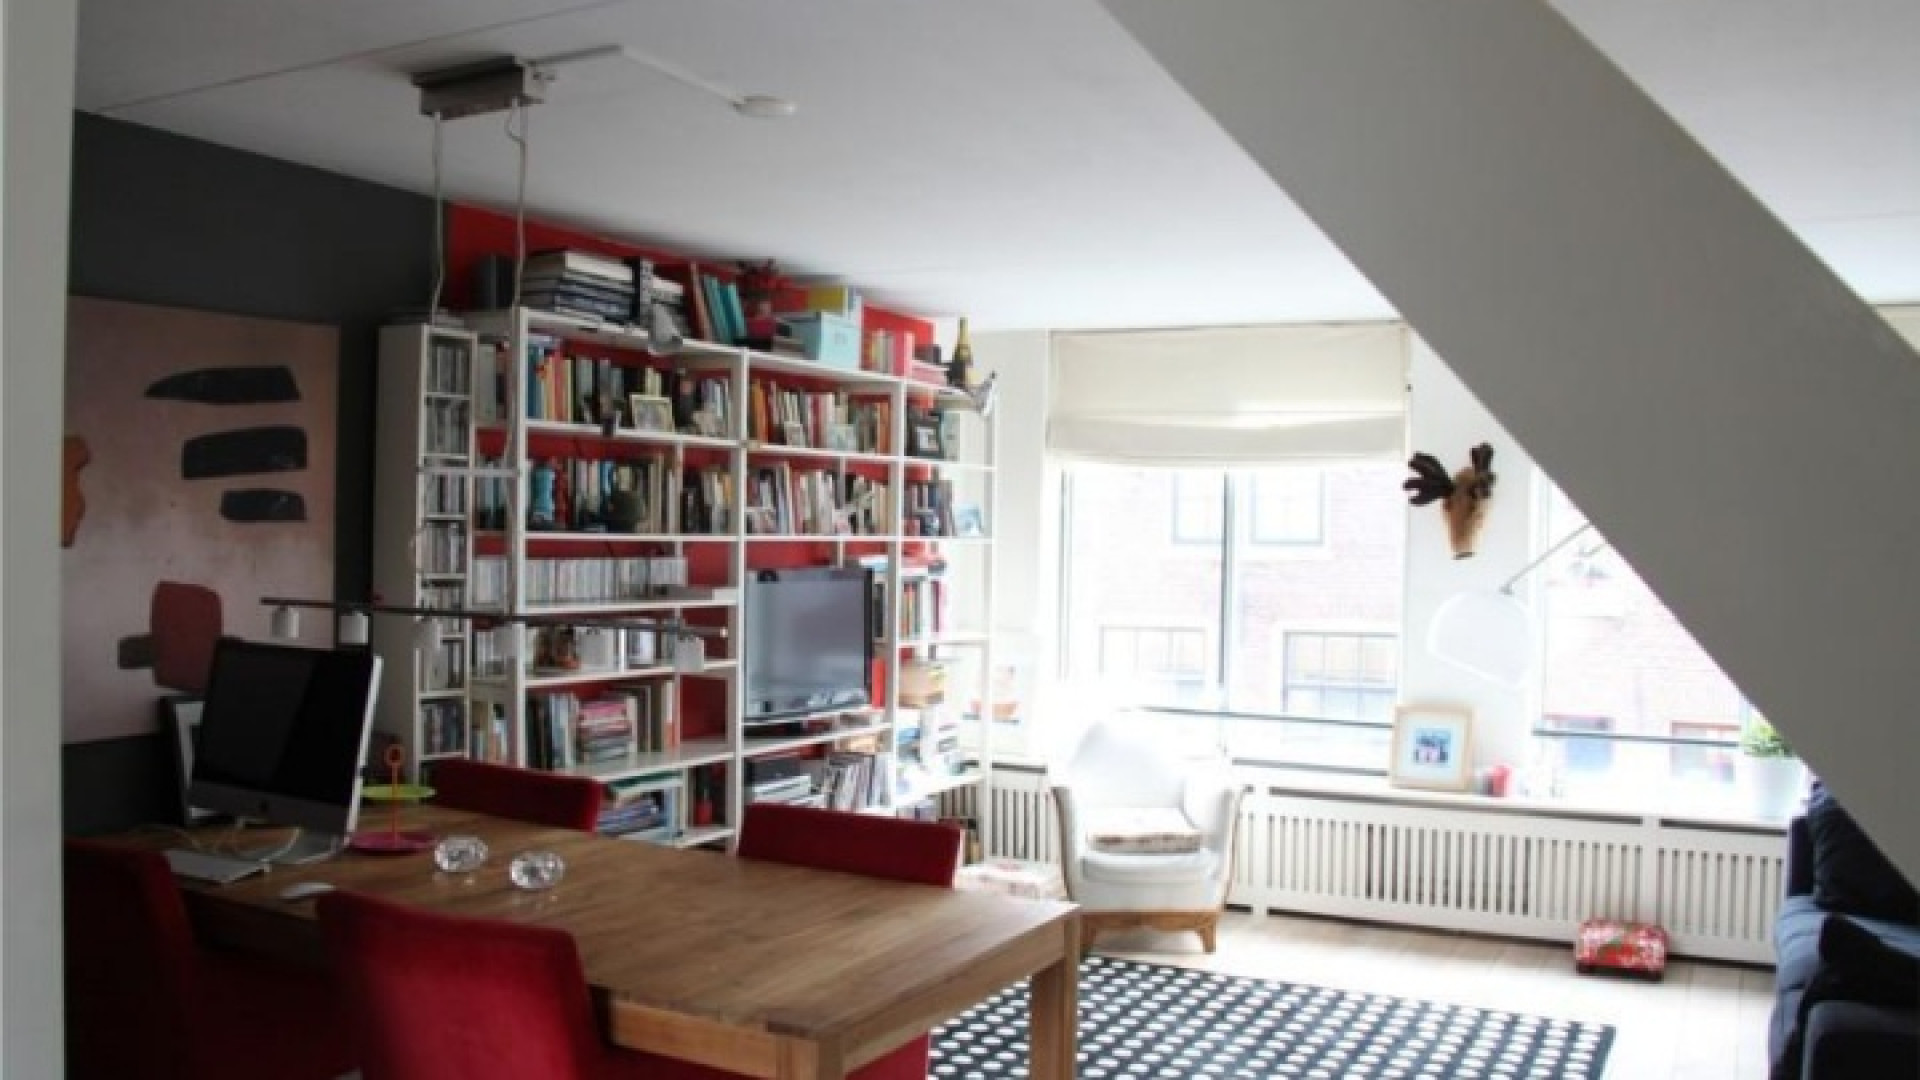 Frank Evenblij haalt zijn huis in de Amsterdamse Jordaan uit de verkoop. Zie foto's 5